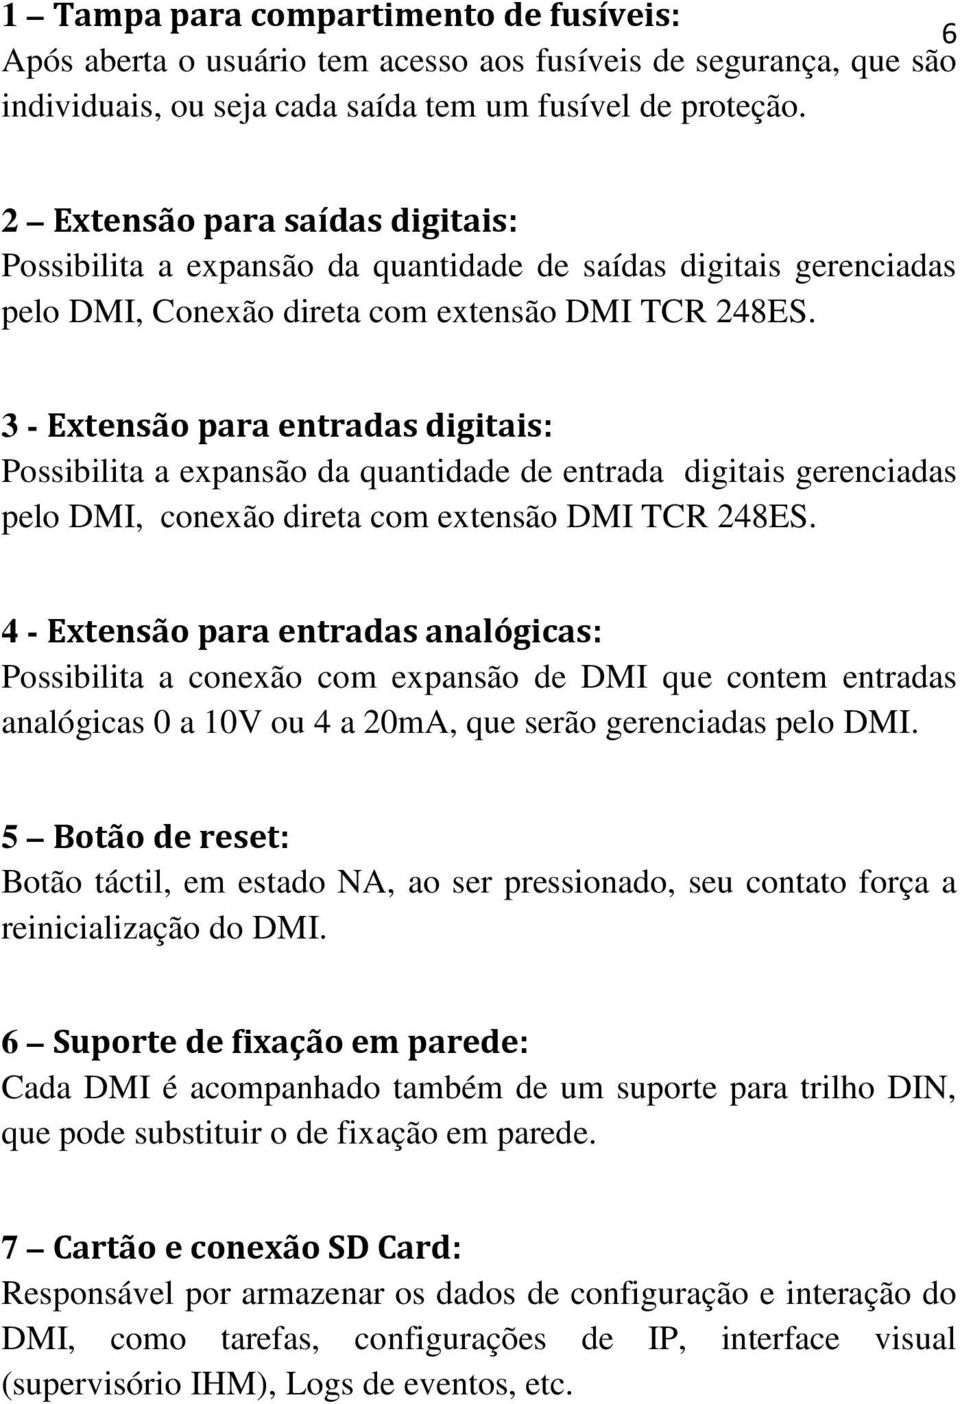 3 - Extensão para entradas digitais: Possibilita a expansão da quantidade de entrada digitais gerenciadas pelo DMI, conexão direta com extensão DMI TCR 248ES.